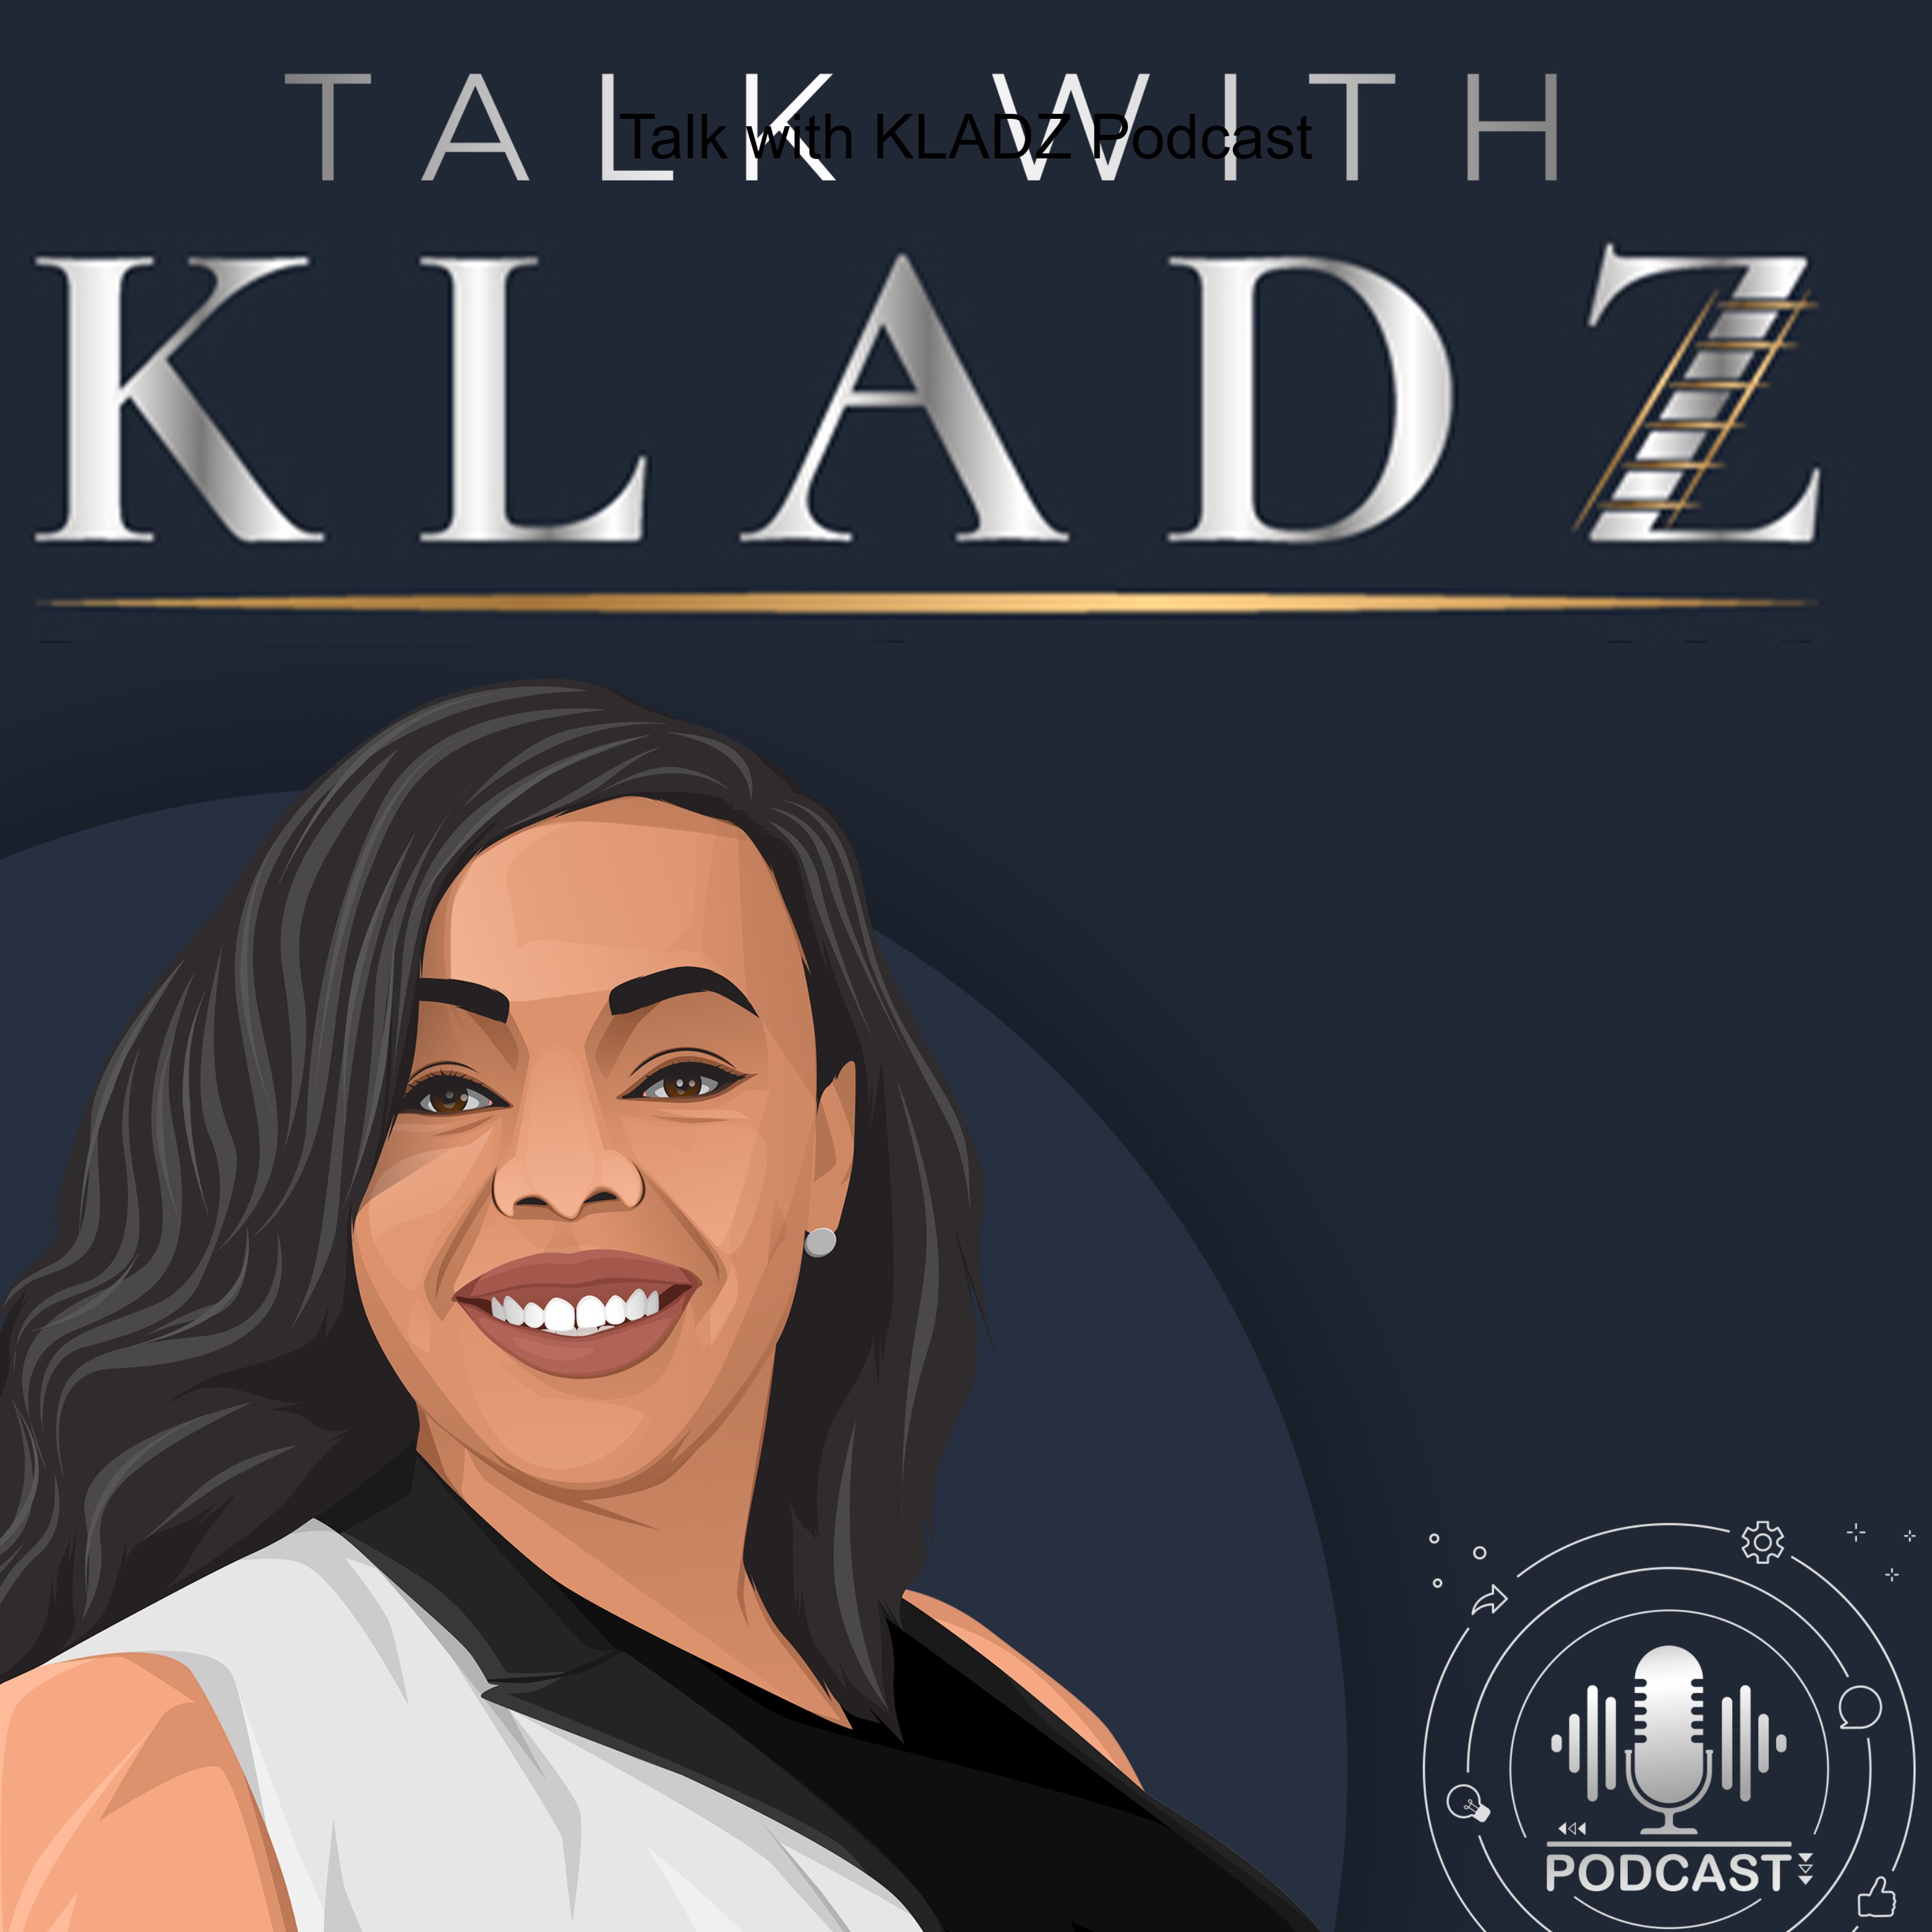 Talk with KLADZ Podcast